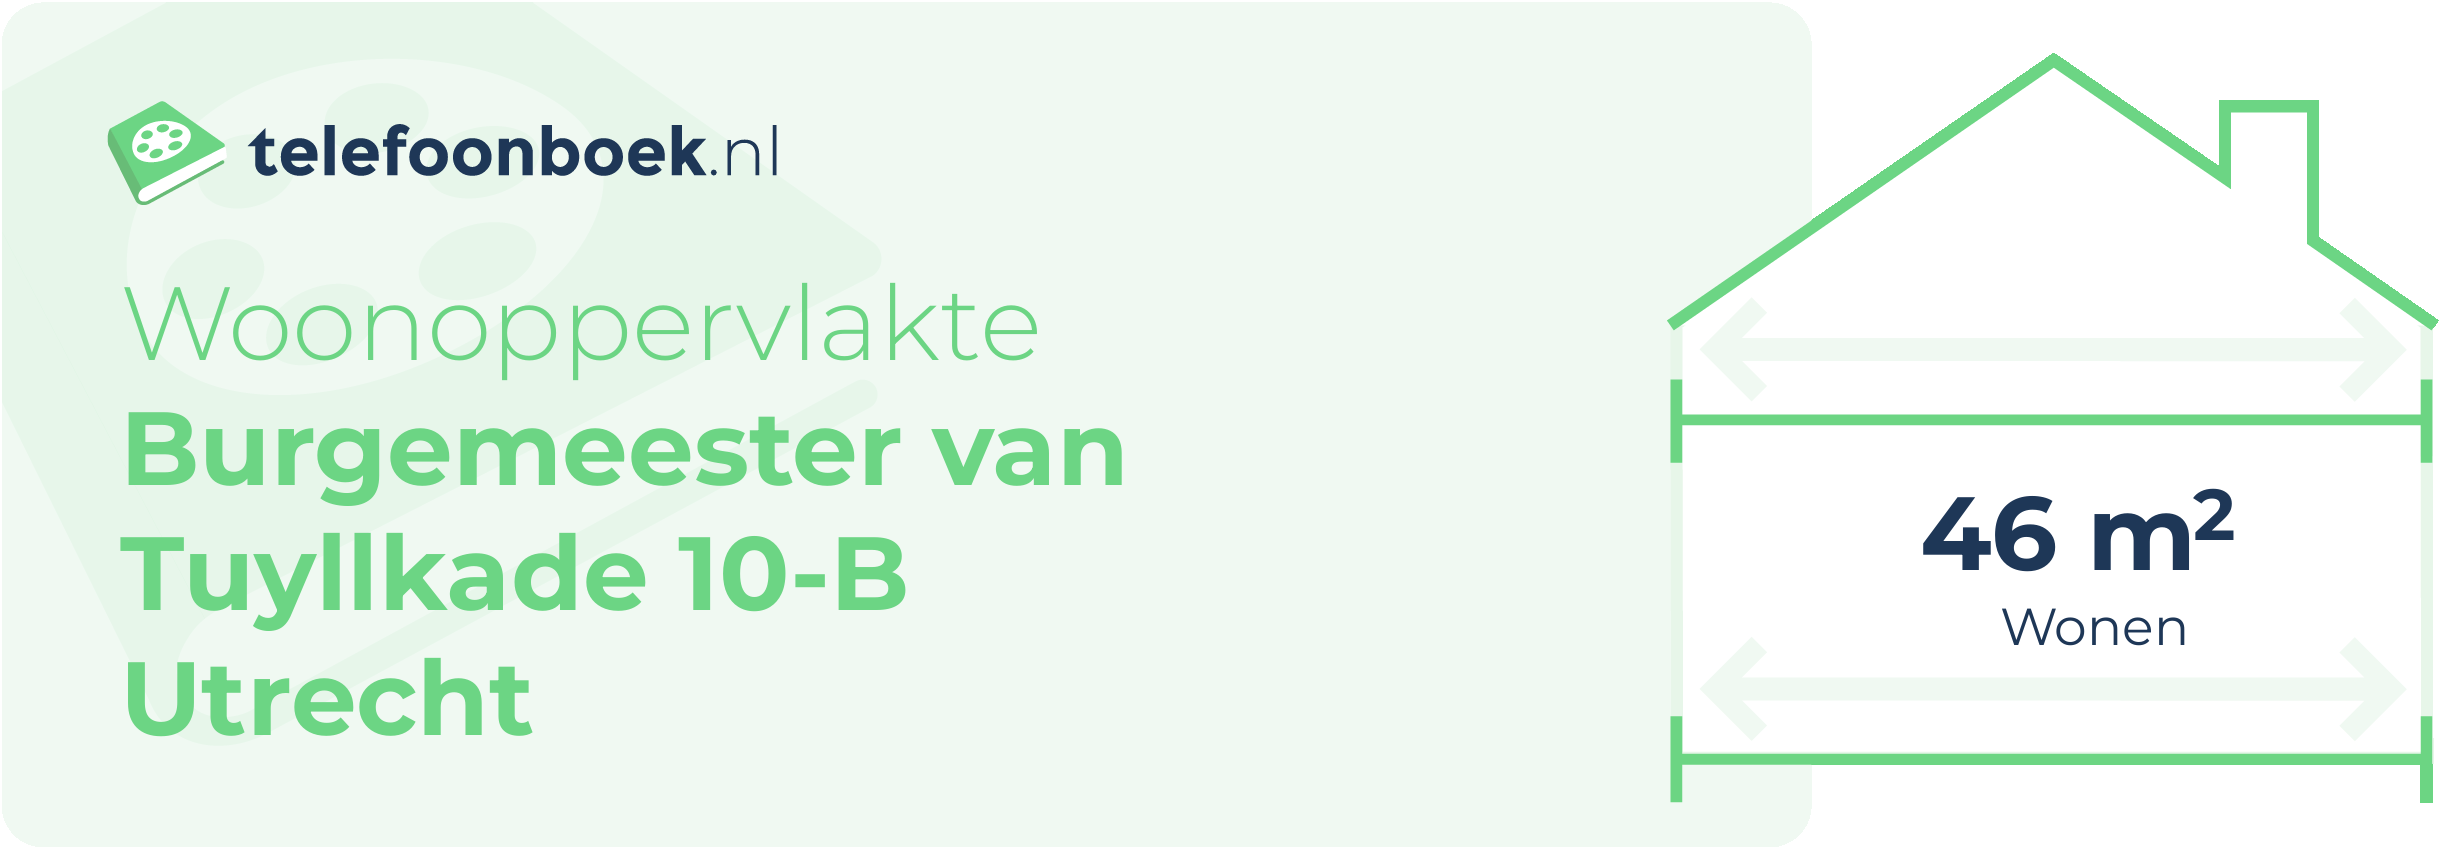 Woonoppervlakte Burgemeester Van Tuyllkade 10-B Utrecht